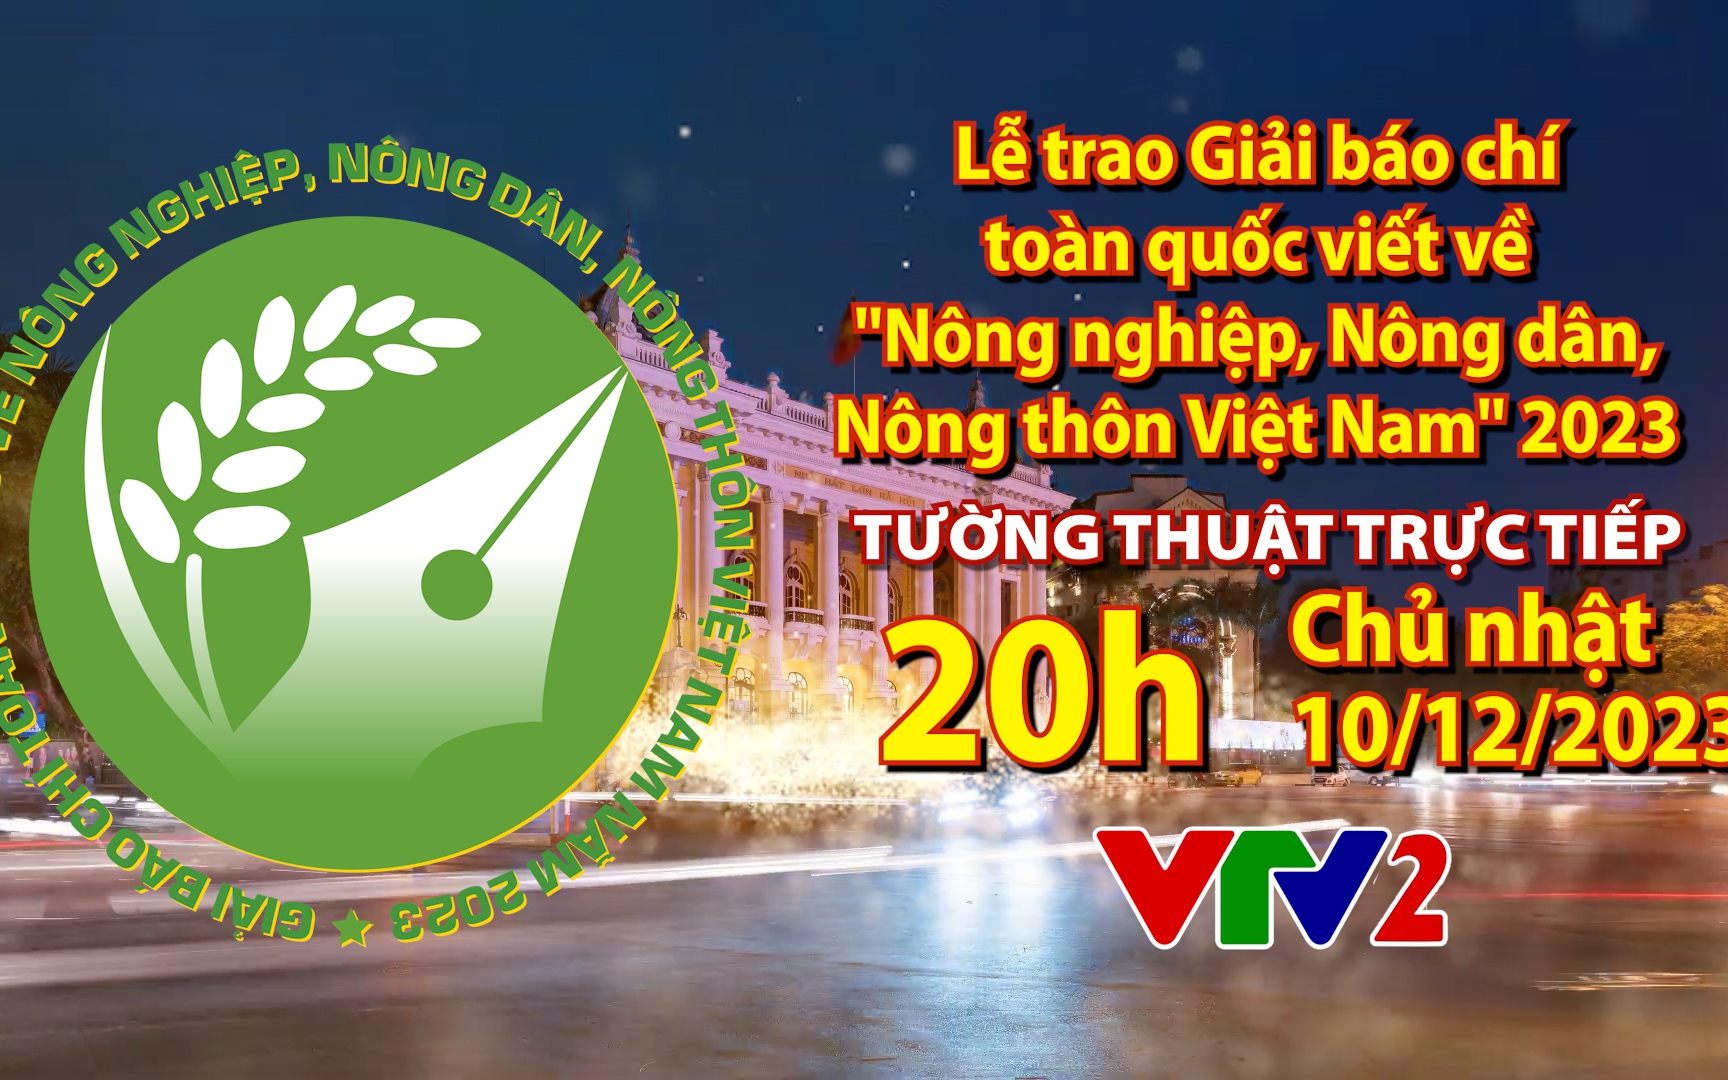 ĐÓN XEM: Lễ trao Giải báo chí toàn quốc viết về "Nông nghiệp, Nông dân, Nông thôn Việt Nam" vào tối 10/12/2023